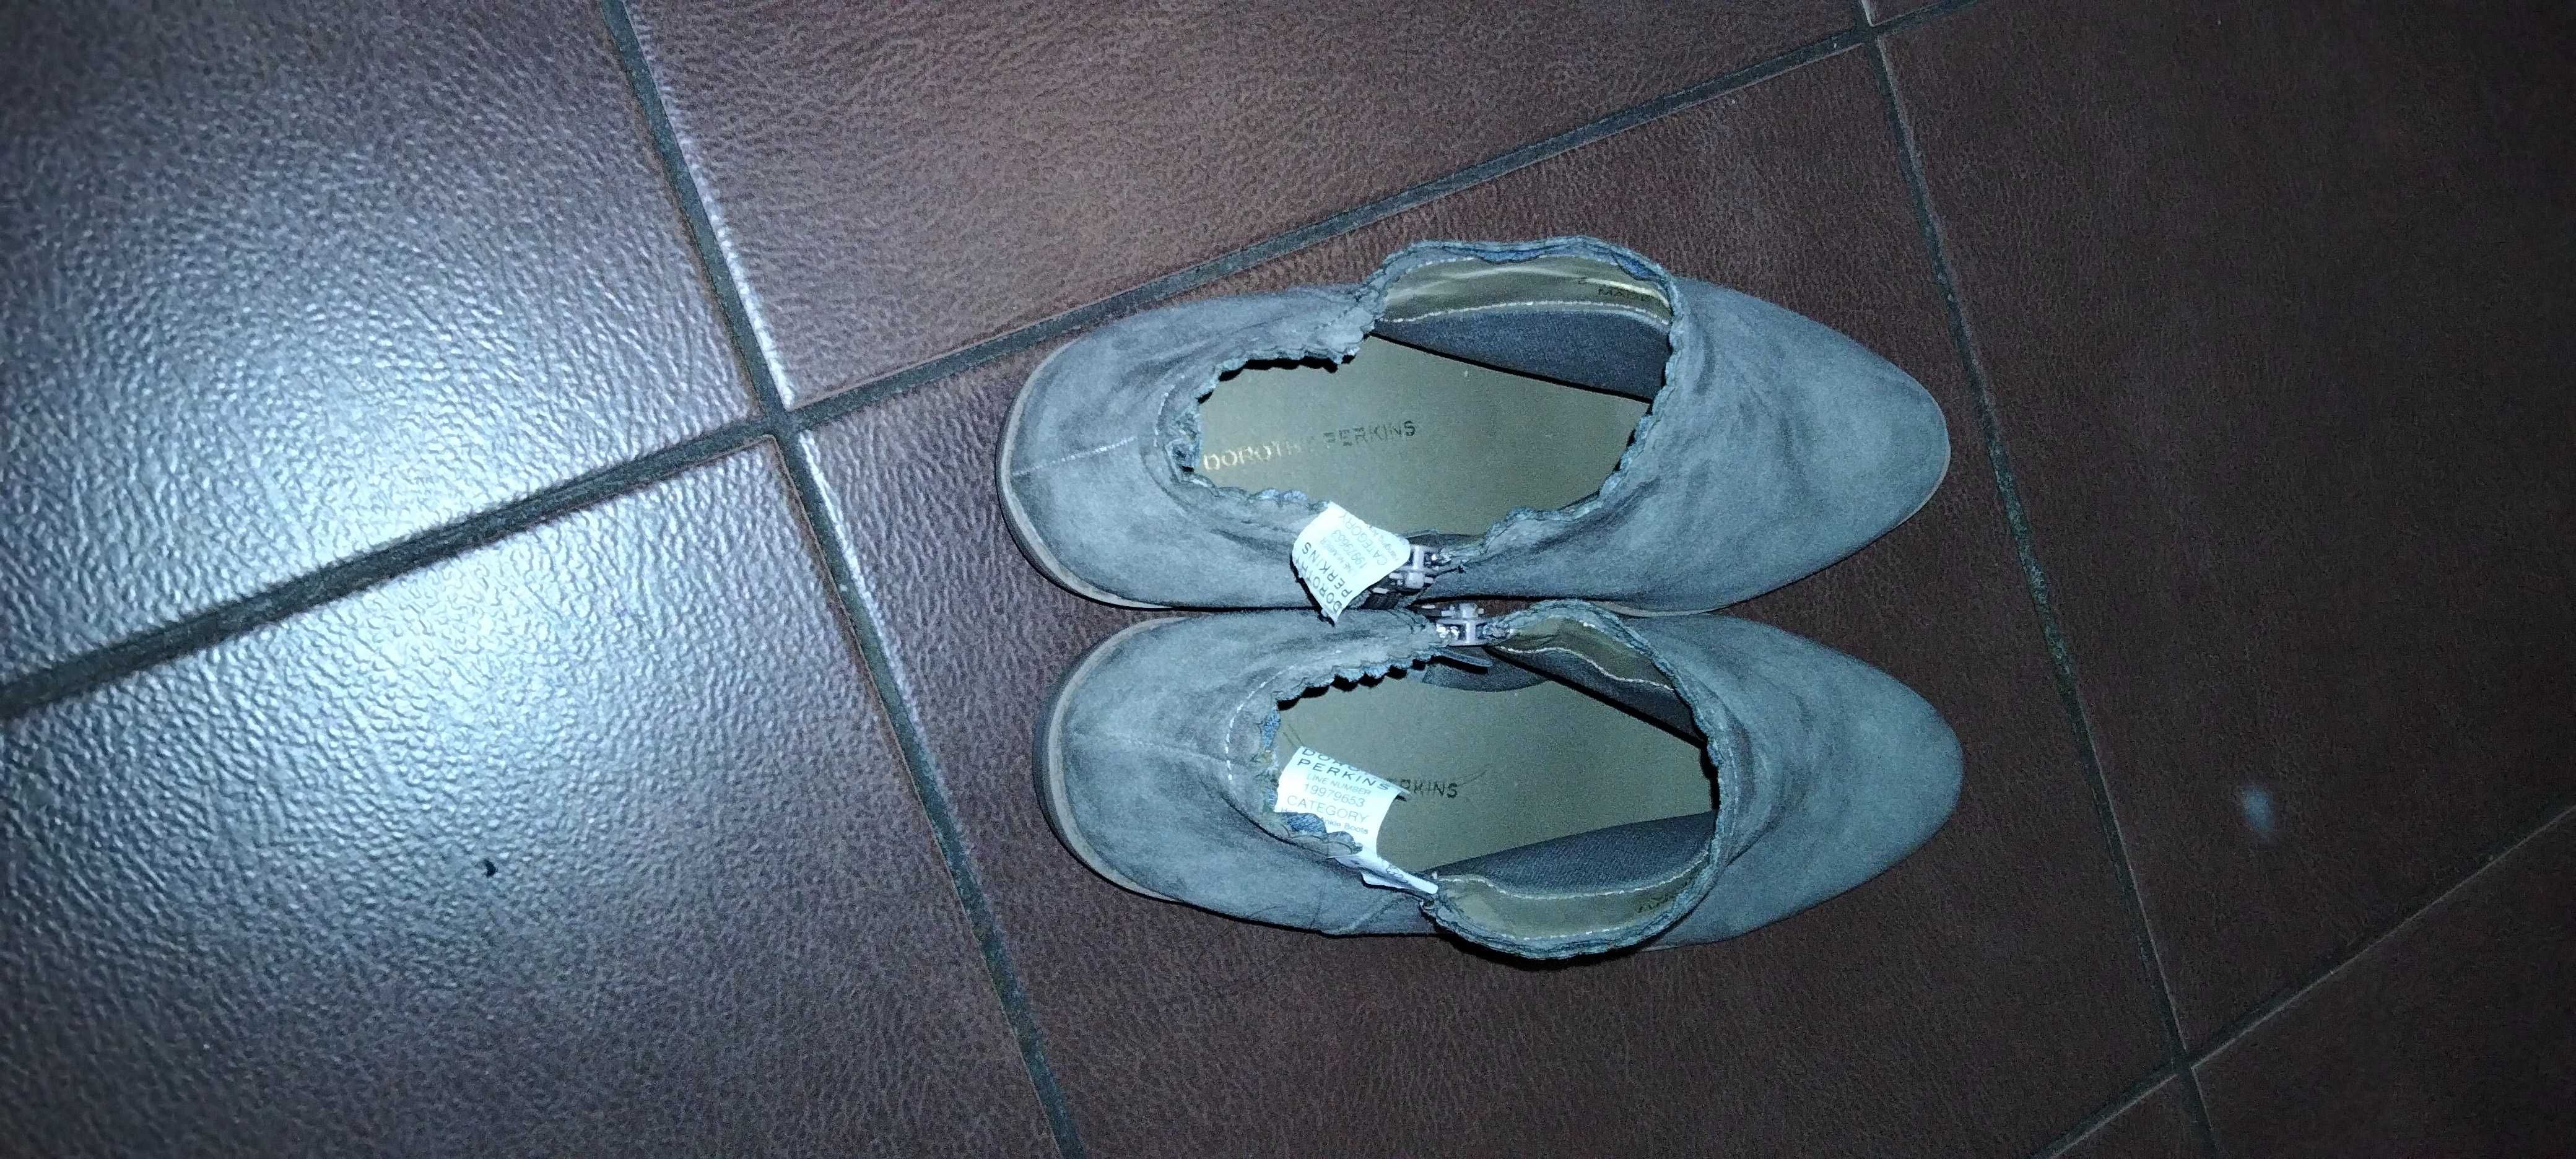 Vand pantofi dama din piele intoarsa(nabuc)  culoare bej, nr39 / NOI